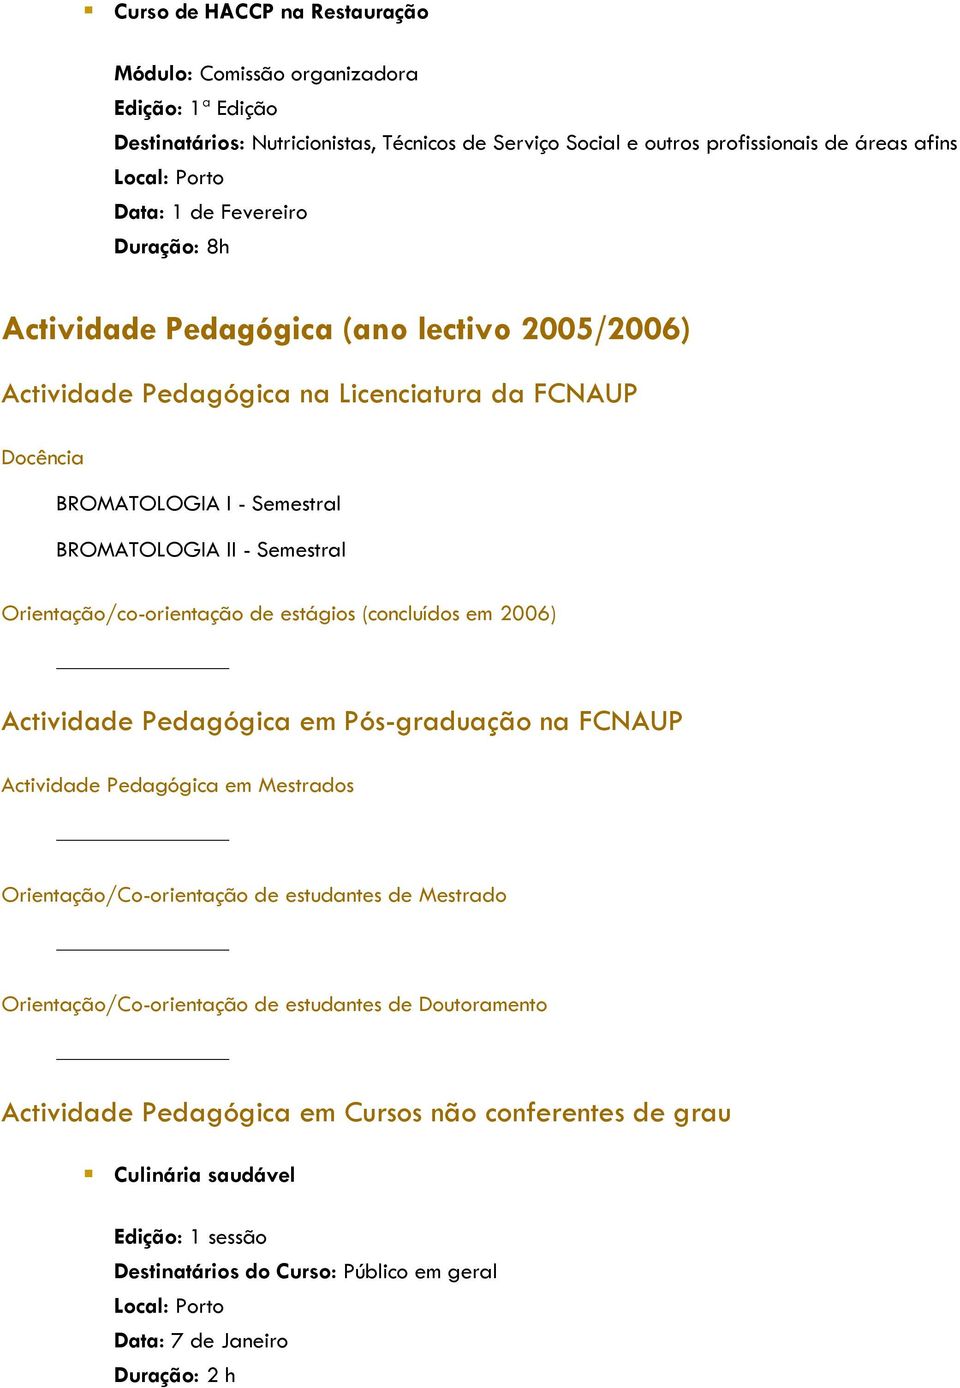 Orientação/co-orientação de estágios (concluídos em 2006) Actividade Pedagógica em Pós-graduação na FCNAUP Actividade Pedagógica em Mestrados Orientação/Co-orientação de estudantes de Mestrado